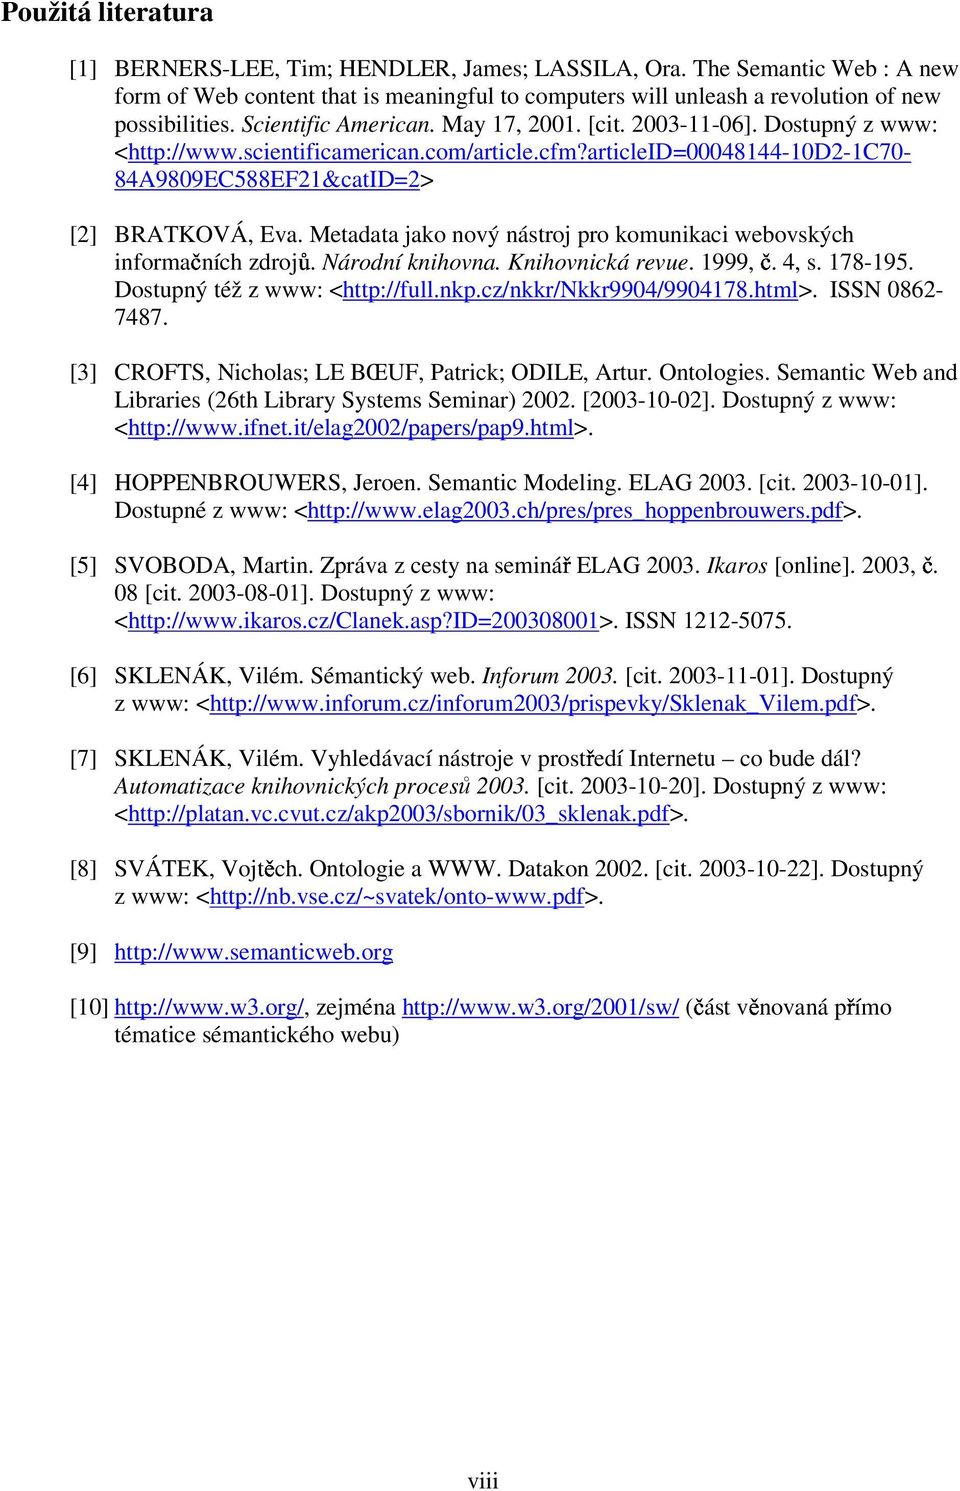 Metadata jako nový nástroj pro komunikaci webovských informačních zdrojů. Národní knihovna. Knihovnická revue. 1999, č. 4, s. 178-195. Dostupný též z www: <http://full.nkp.cz/nkkr/nkkr9904/9904178.